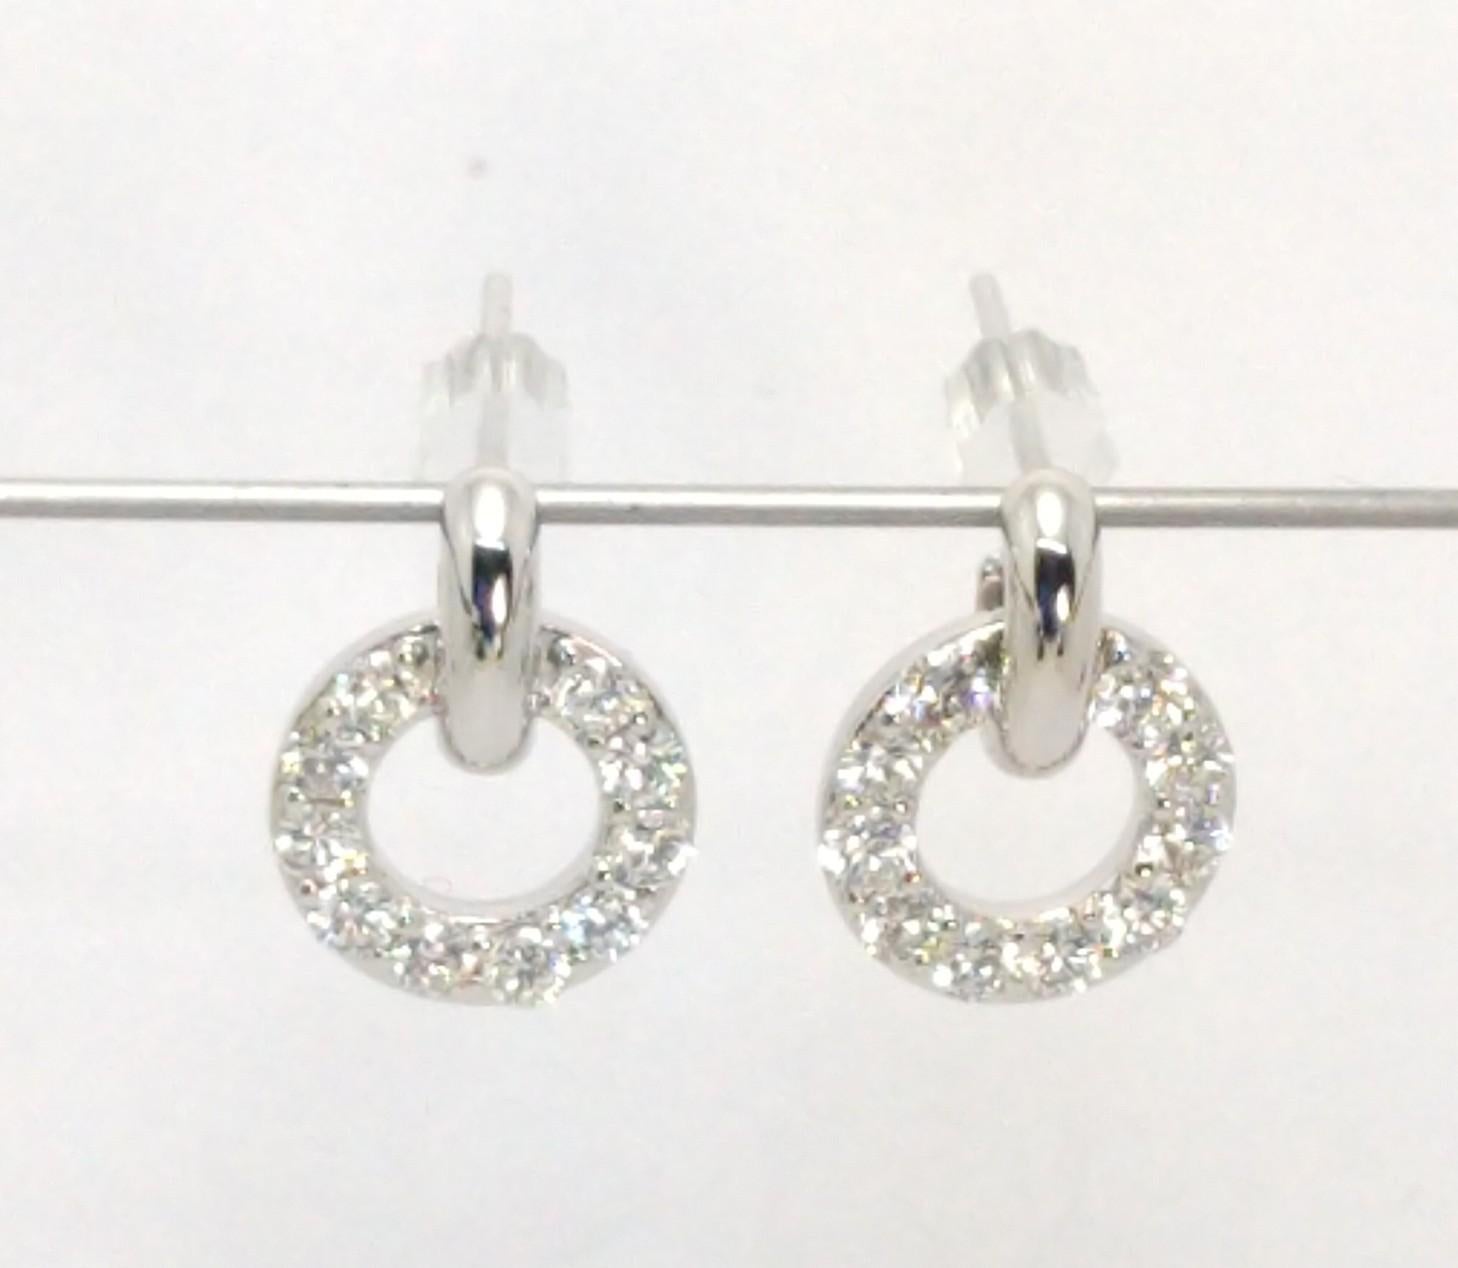 Platin und Silber GIA Petite Diamant  Hoop Dangle Earrings, Diese sind winzig. Der Ohrring ist 14 mm x 10,5 mm groß. Winzig, aber mächtig. Den ganzen Tag Eleganz, bis in den Abend hinein kein Problem. 
 Diese neue Metallmischung aus Platin gemischt